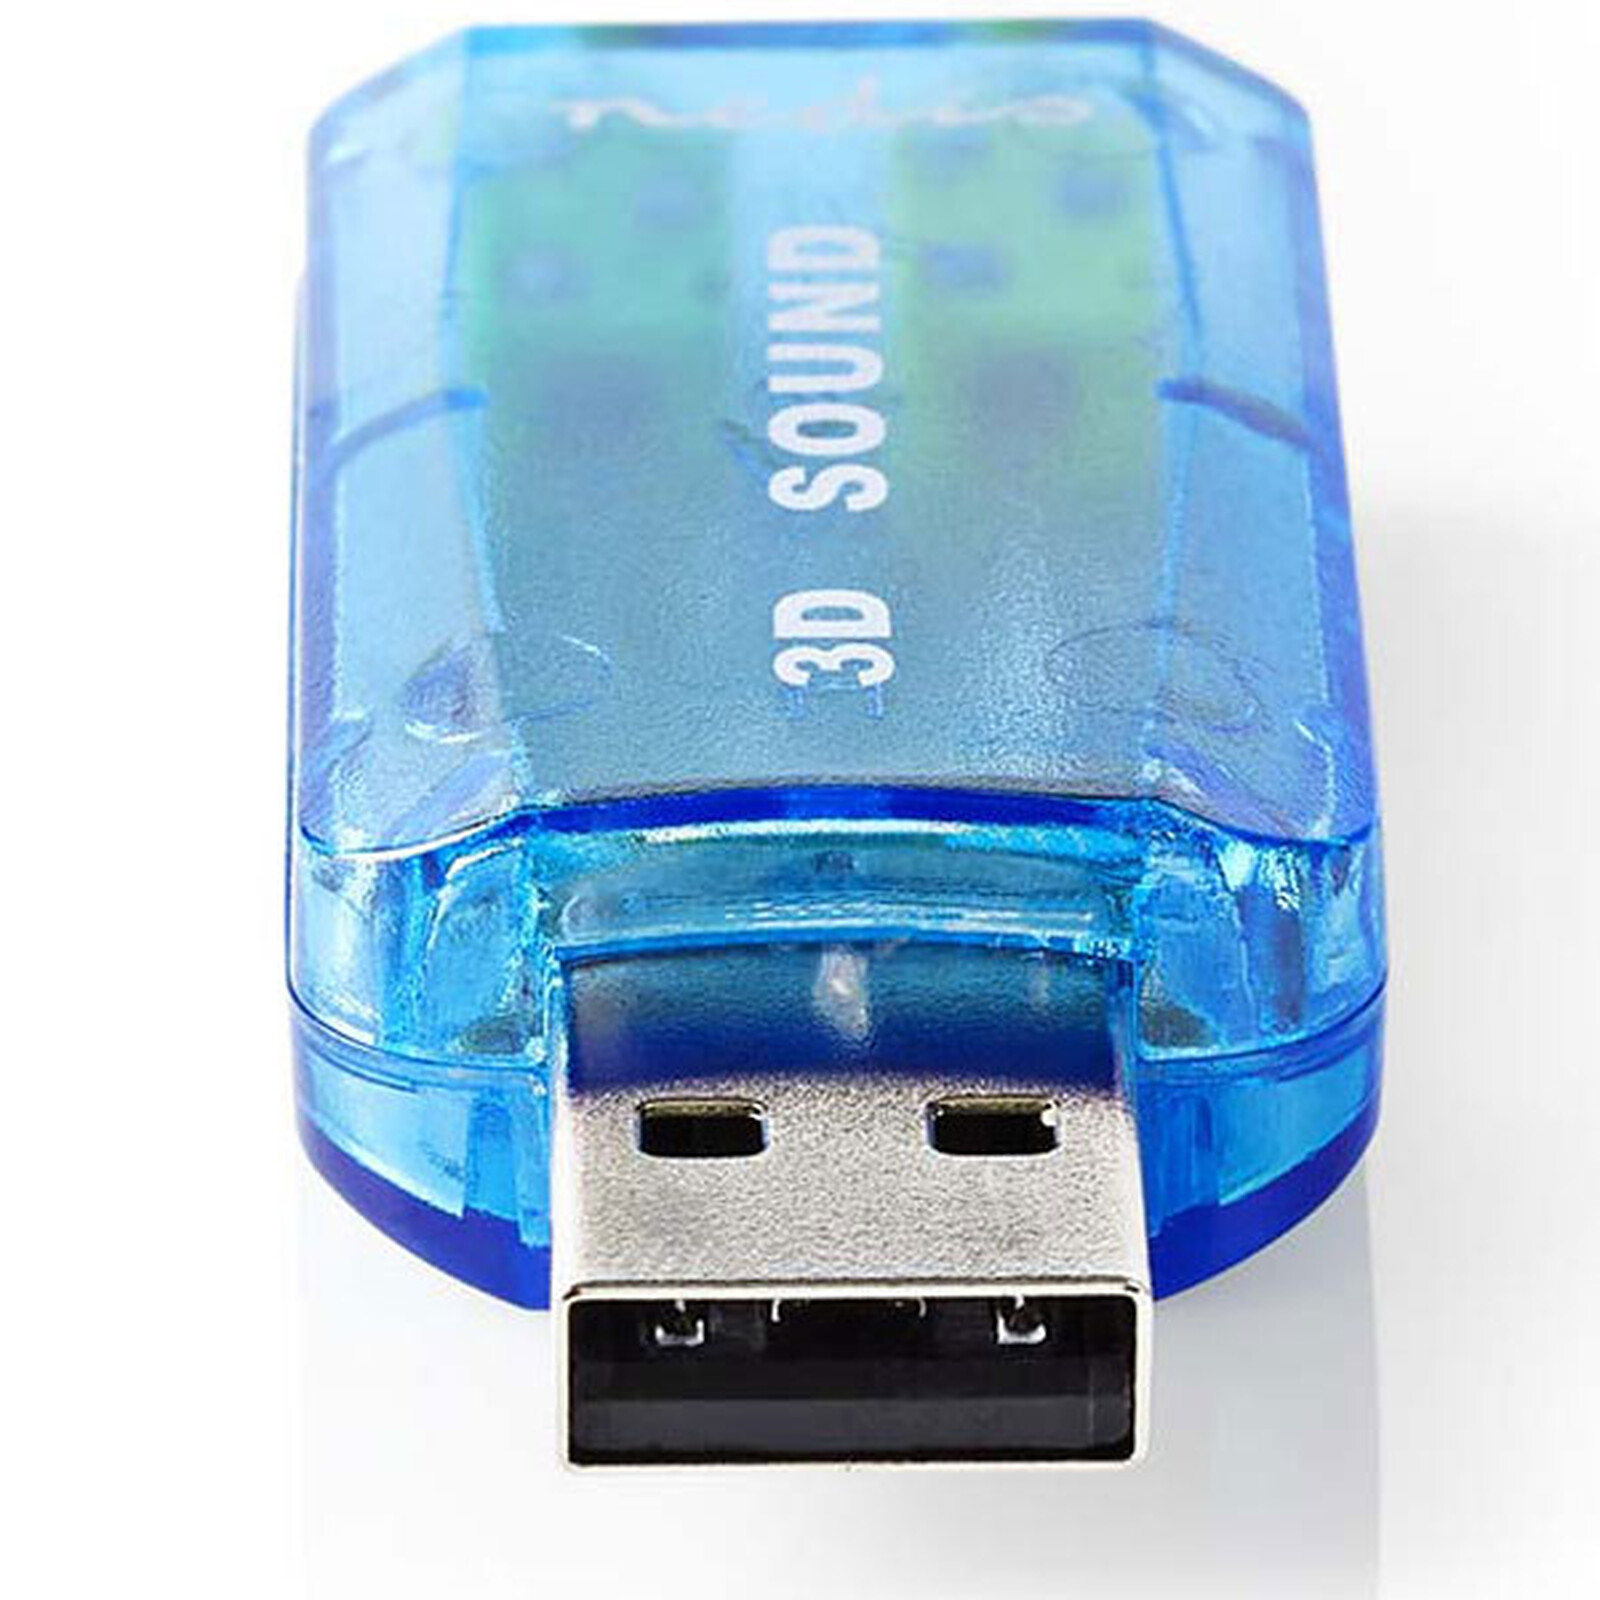 StarTech.com Carte son / Adaptateur USB vers audio stéréo - Carte son  externe - Garantie 3 ans LDLC